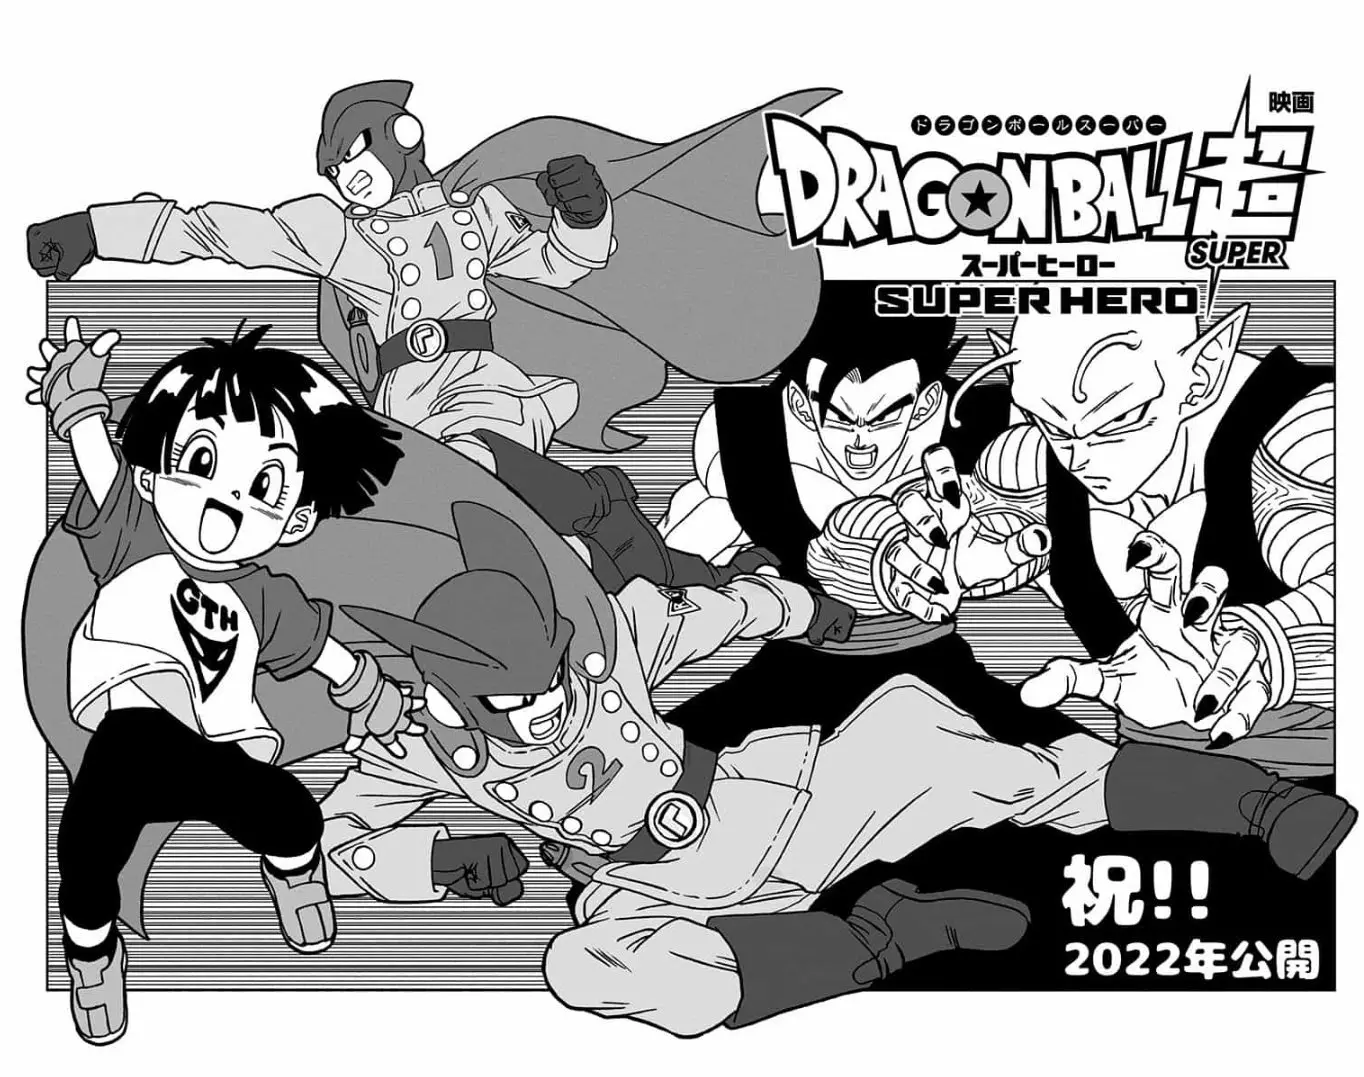 Dragon Ball Super manga 93: ya puedes leer el nuevo capítulo completo  gratis y en español latino